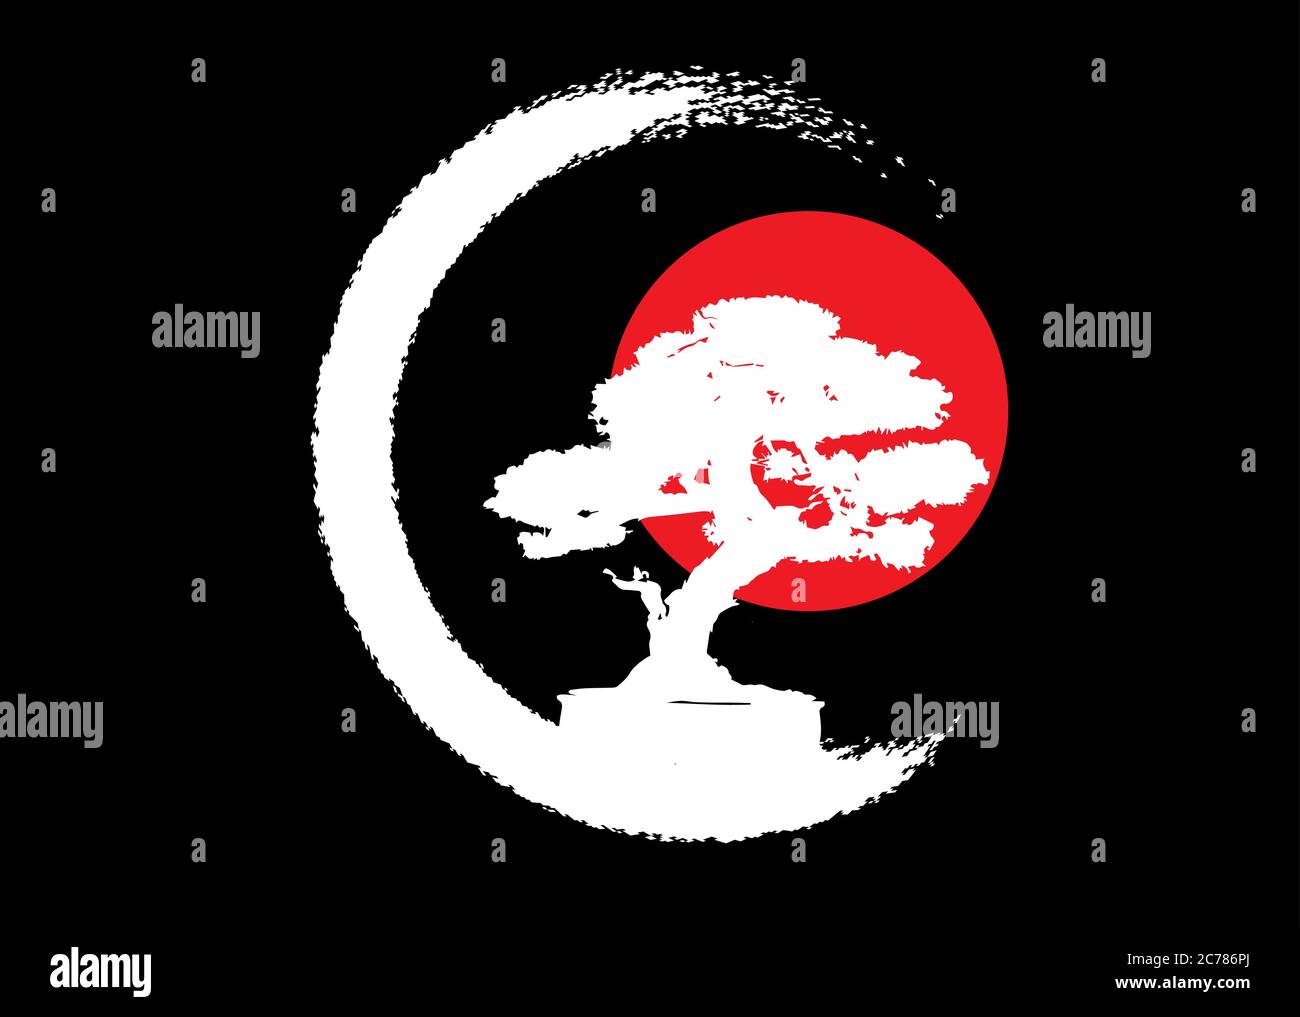 Logo de bonsaï japonais, icônes de silhouette de plante blanche sur fond noir, silhouette écologique verte de bonsaï et coucher de soleil rouge. Isolation d'image détaillée Illustration de Vecteur